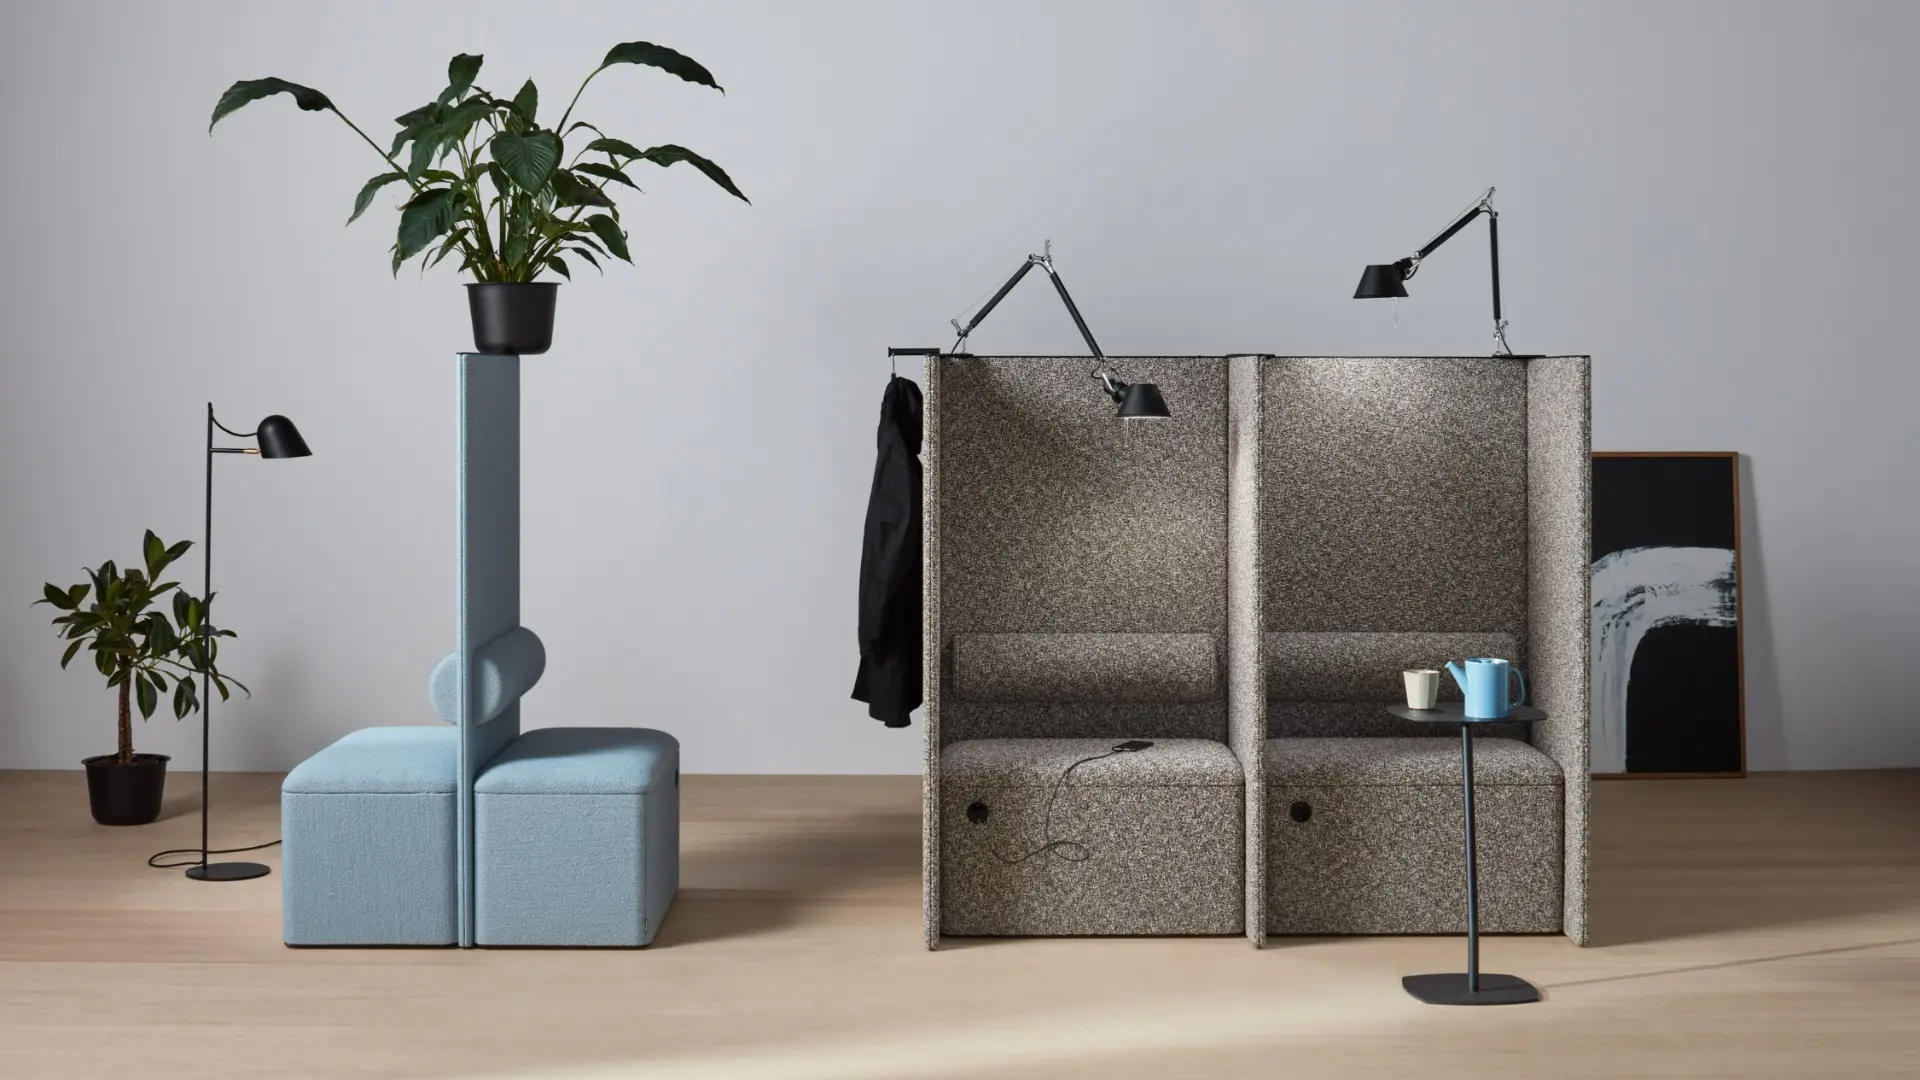 dB Modular sofa by Thomas Bernstrand for Abstracta